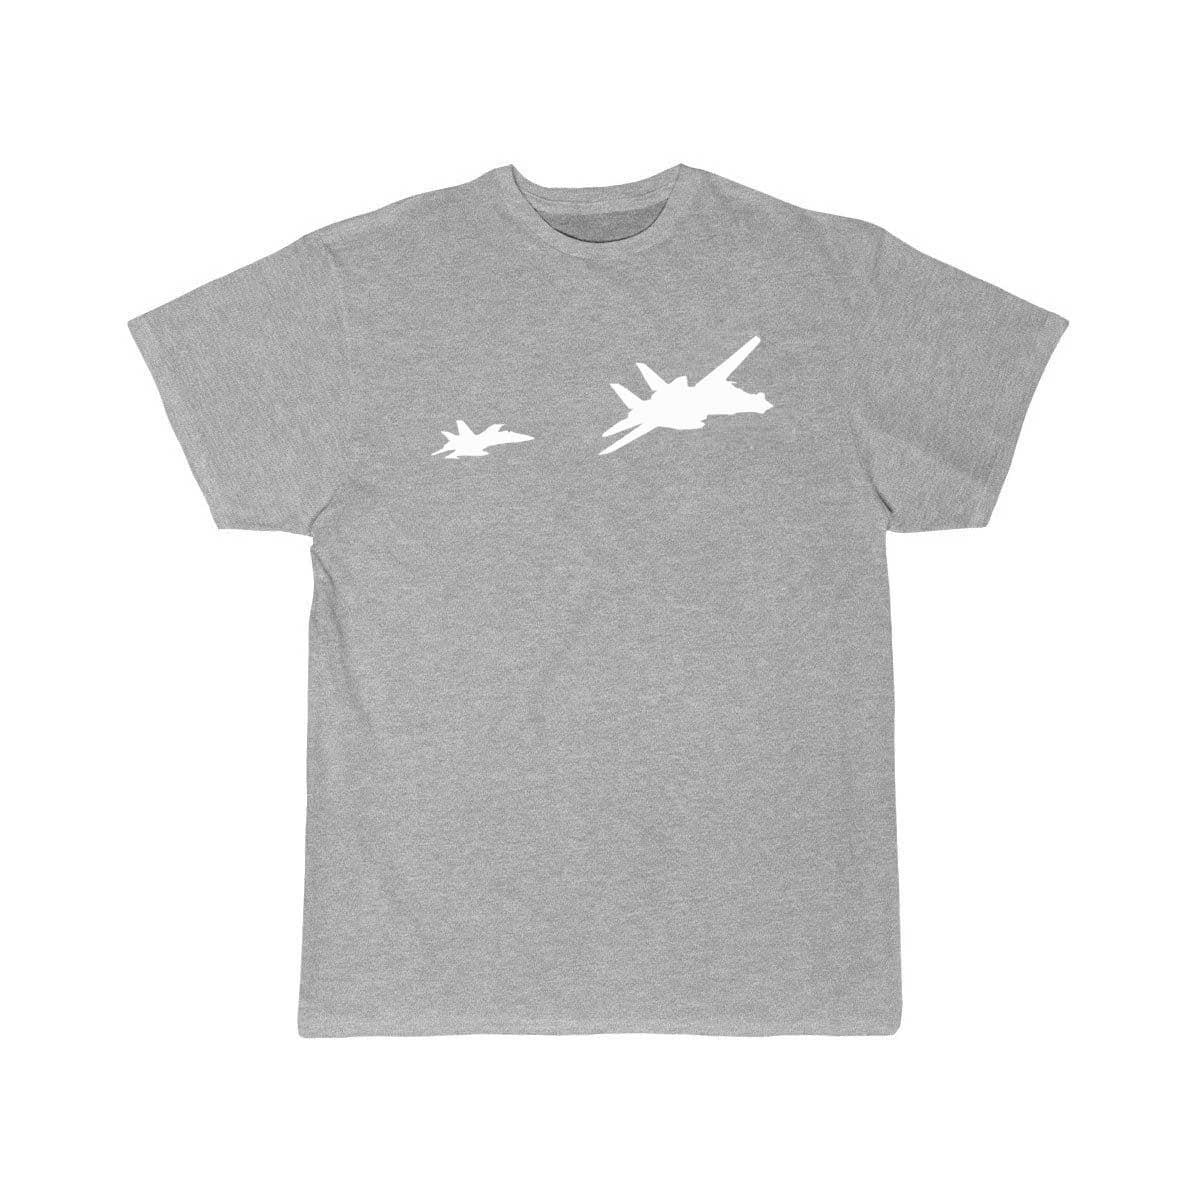 Two fighter jets fight design T Shirt THE AV8R